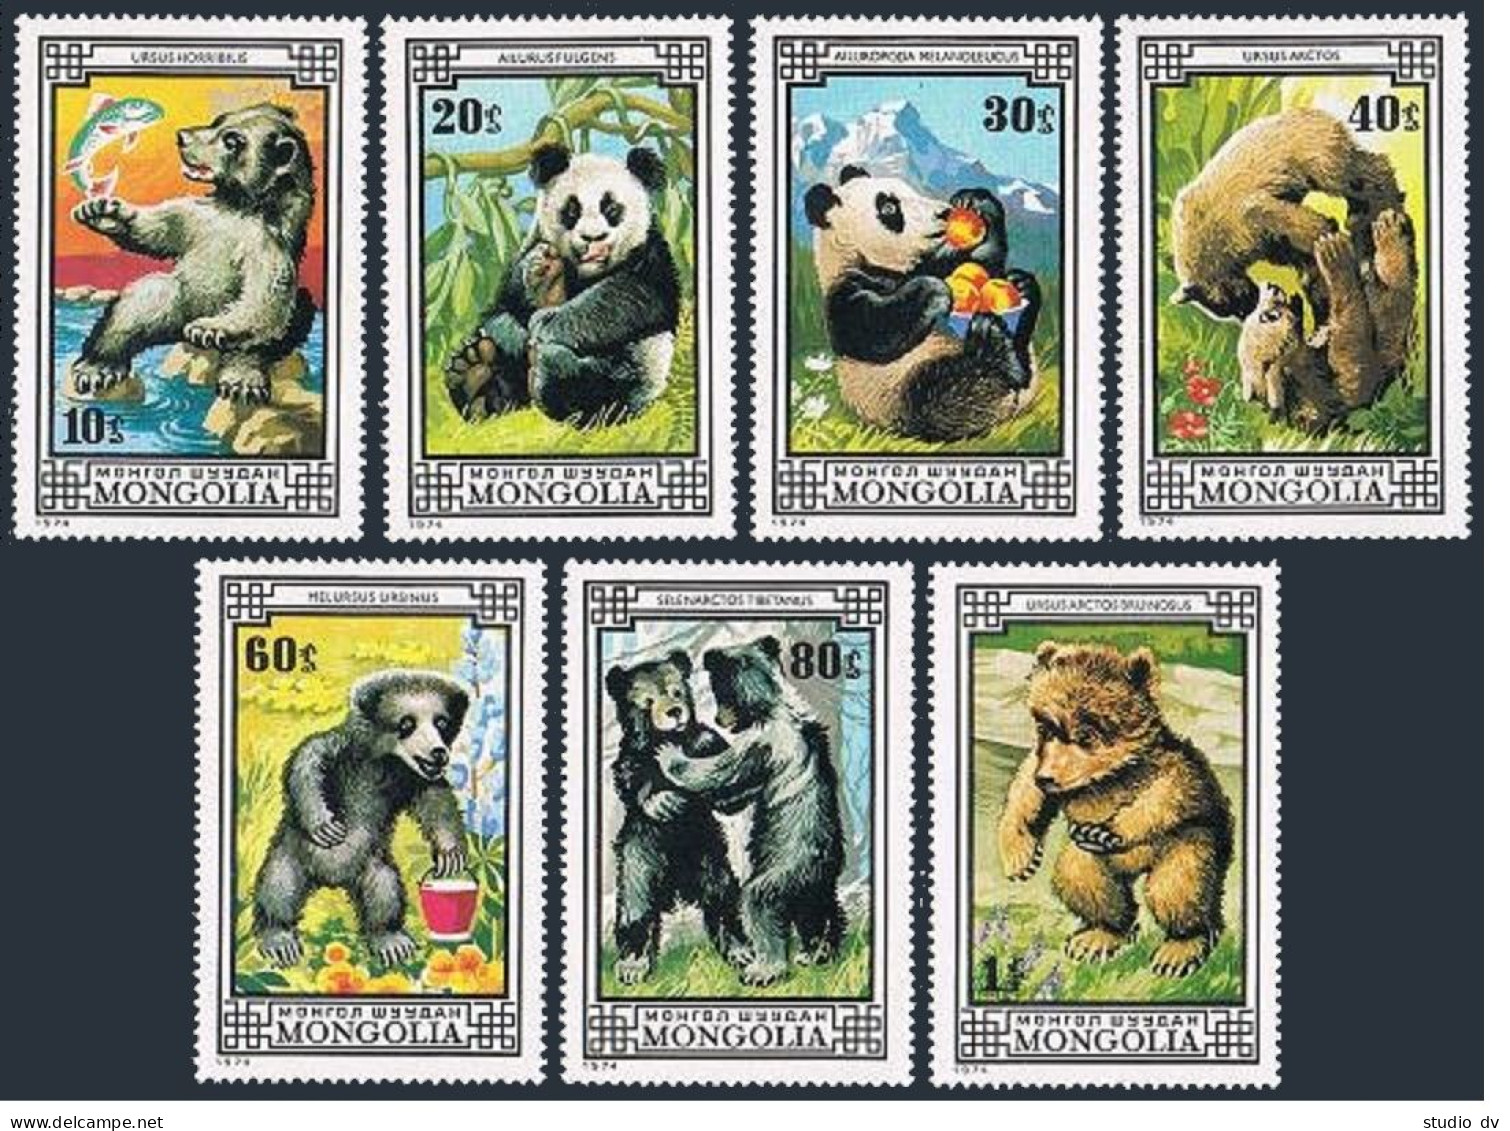 Mongolia 788-794,MNH.Michel 871-877. Animals 1974.Bears,Panda. - Mongolia